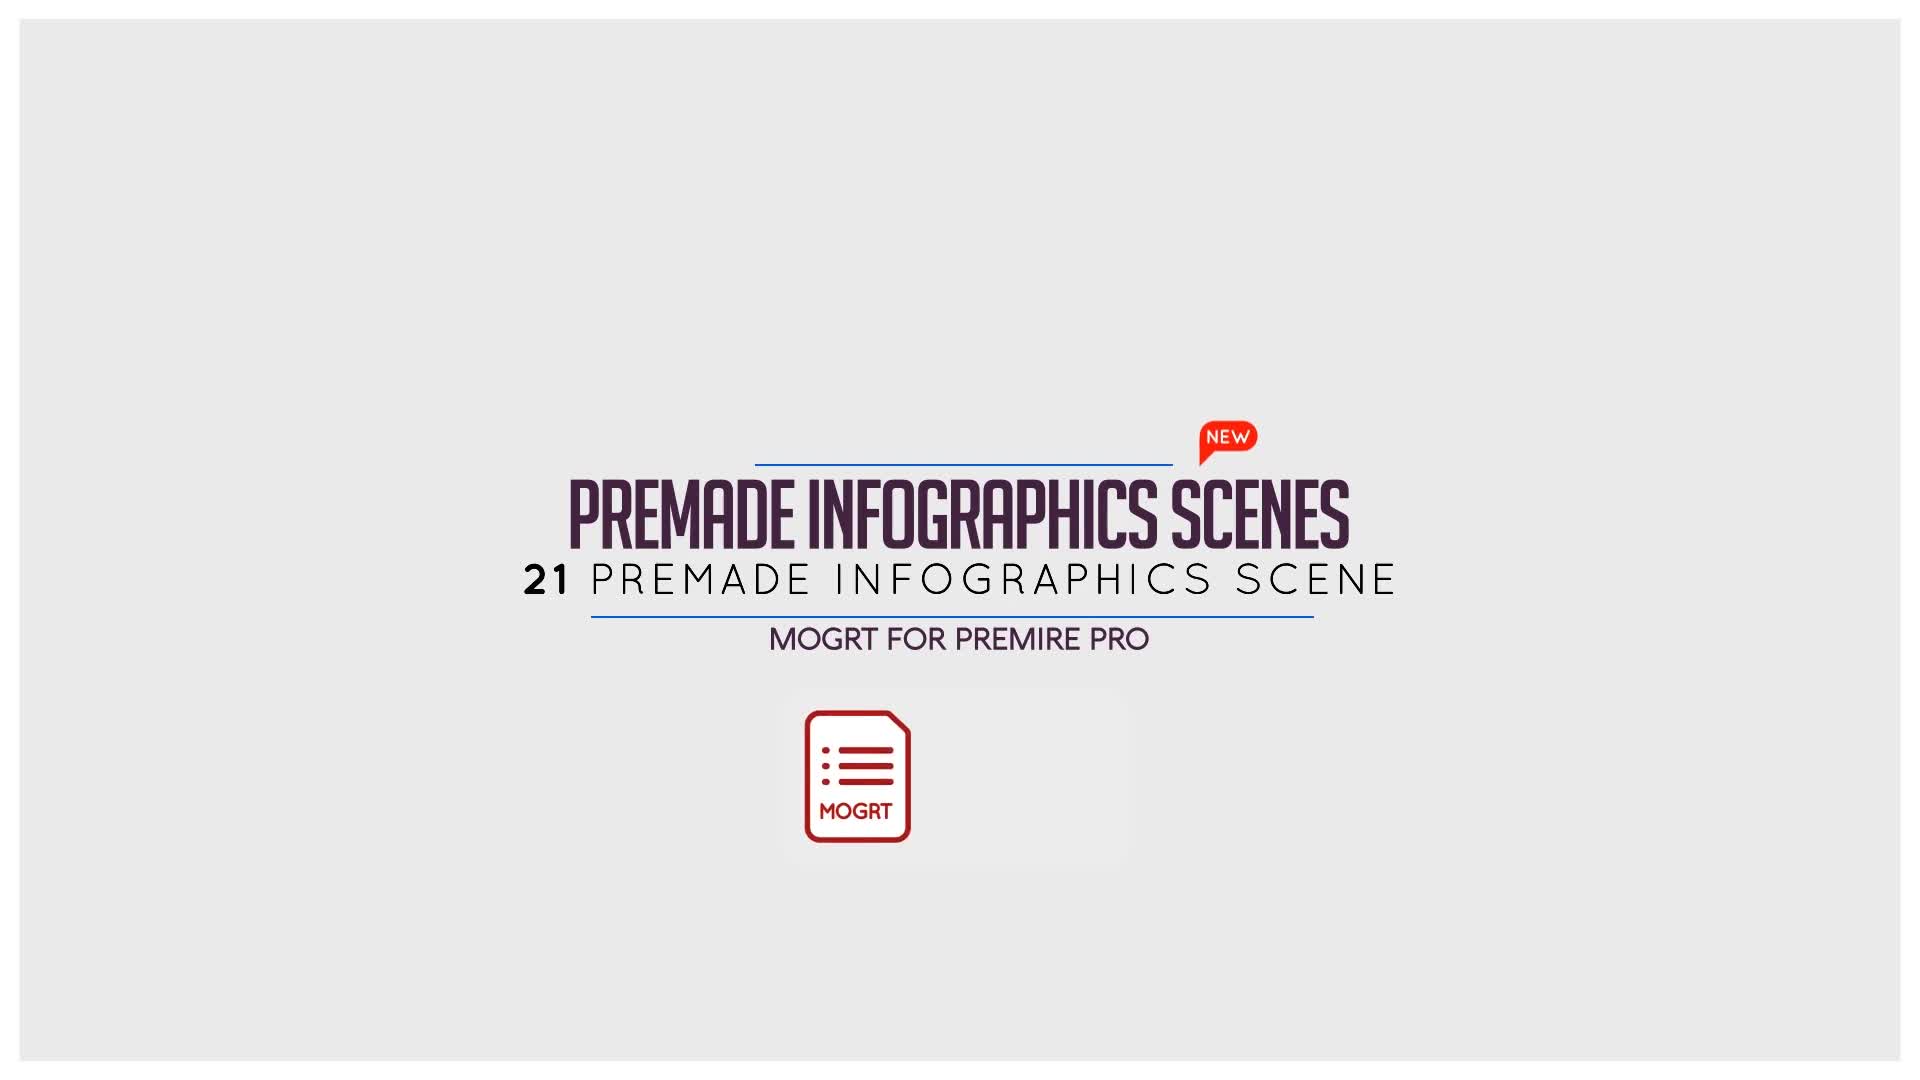 Premade Infographic Scenes - Download Videohive 23337842